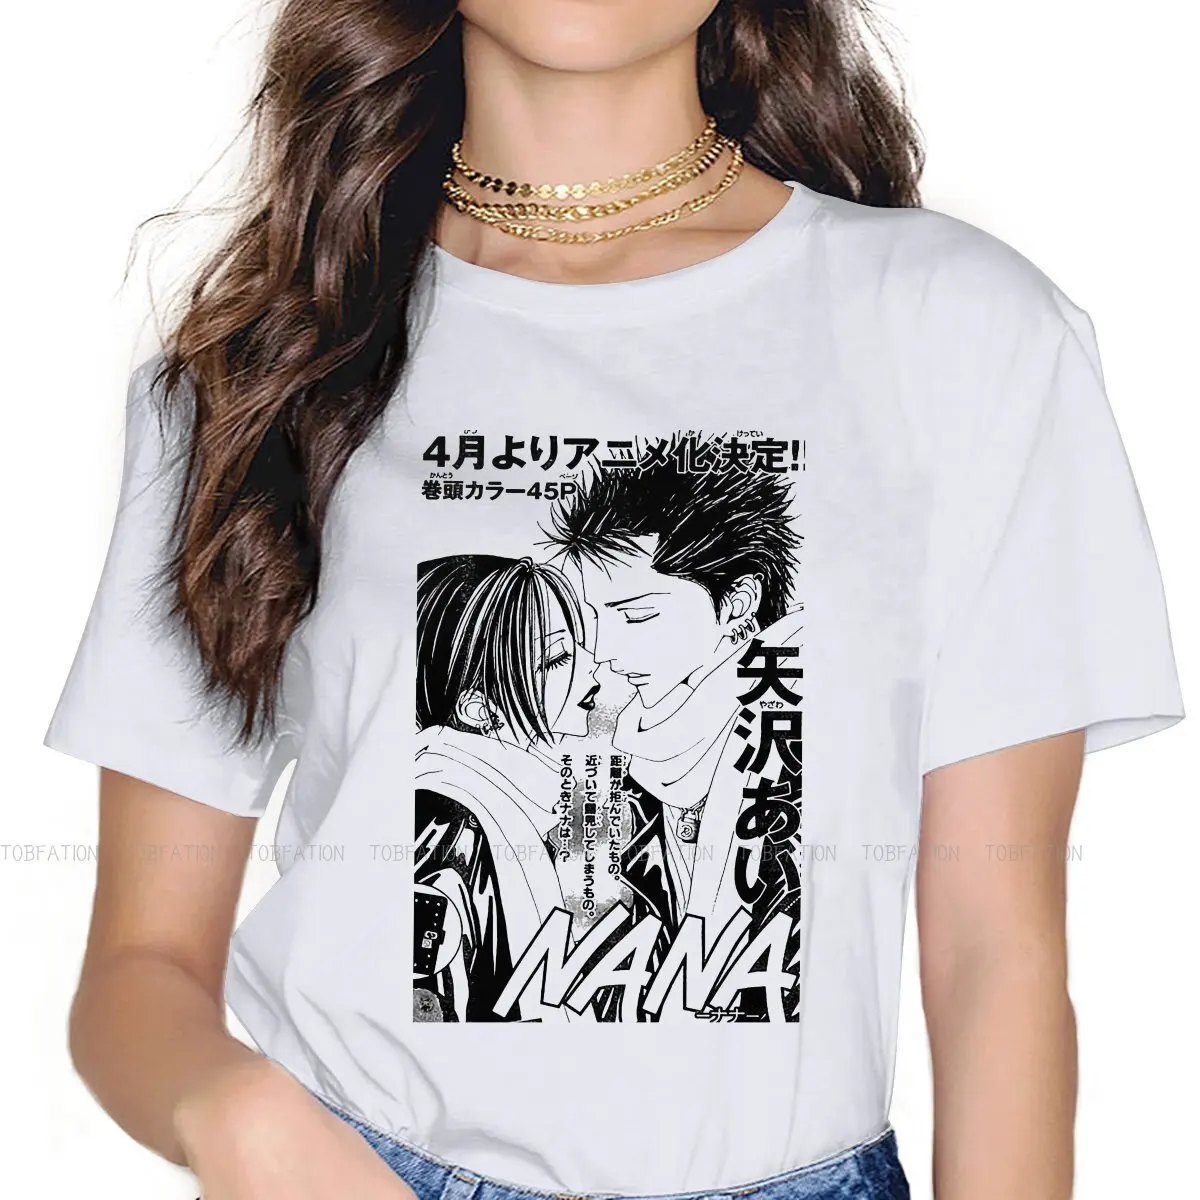 

Женская футболка с надписью «Love», базовый топ с круглым вырезом для девушек с персонажами из мультфильмов «Nano Yazawa Ai», 5XL, модный подарок